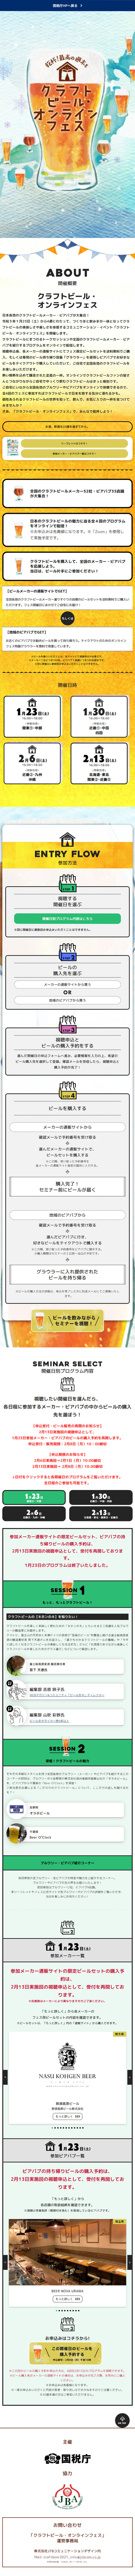 クラフトビール・オンラインフェス_sp_1